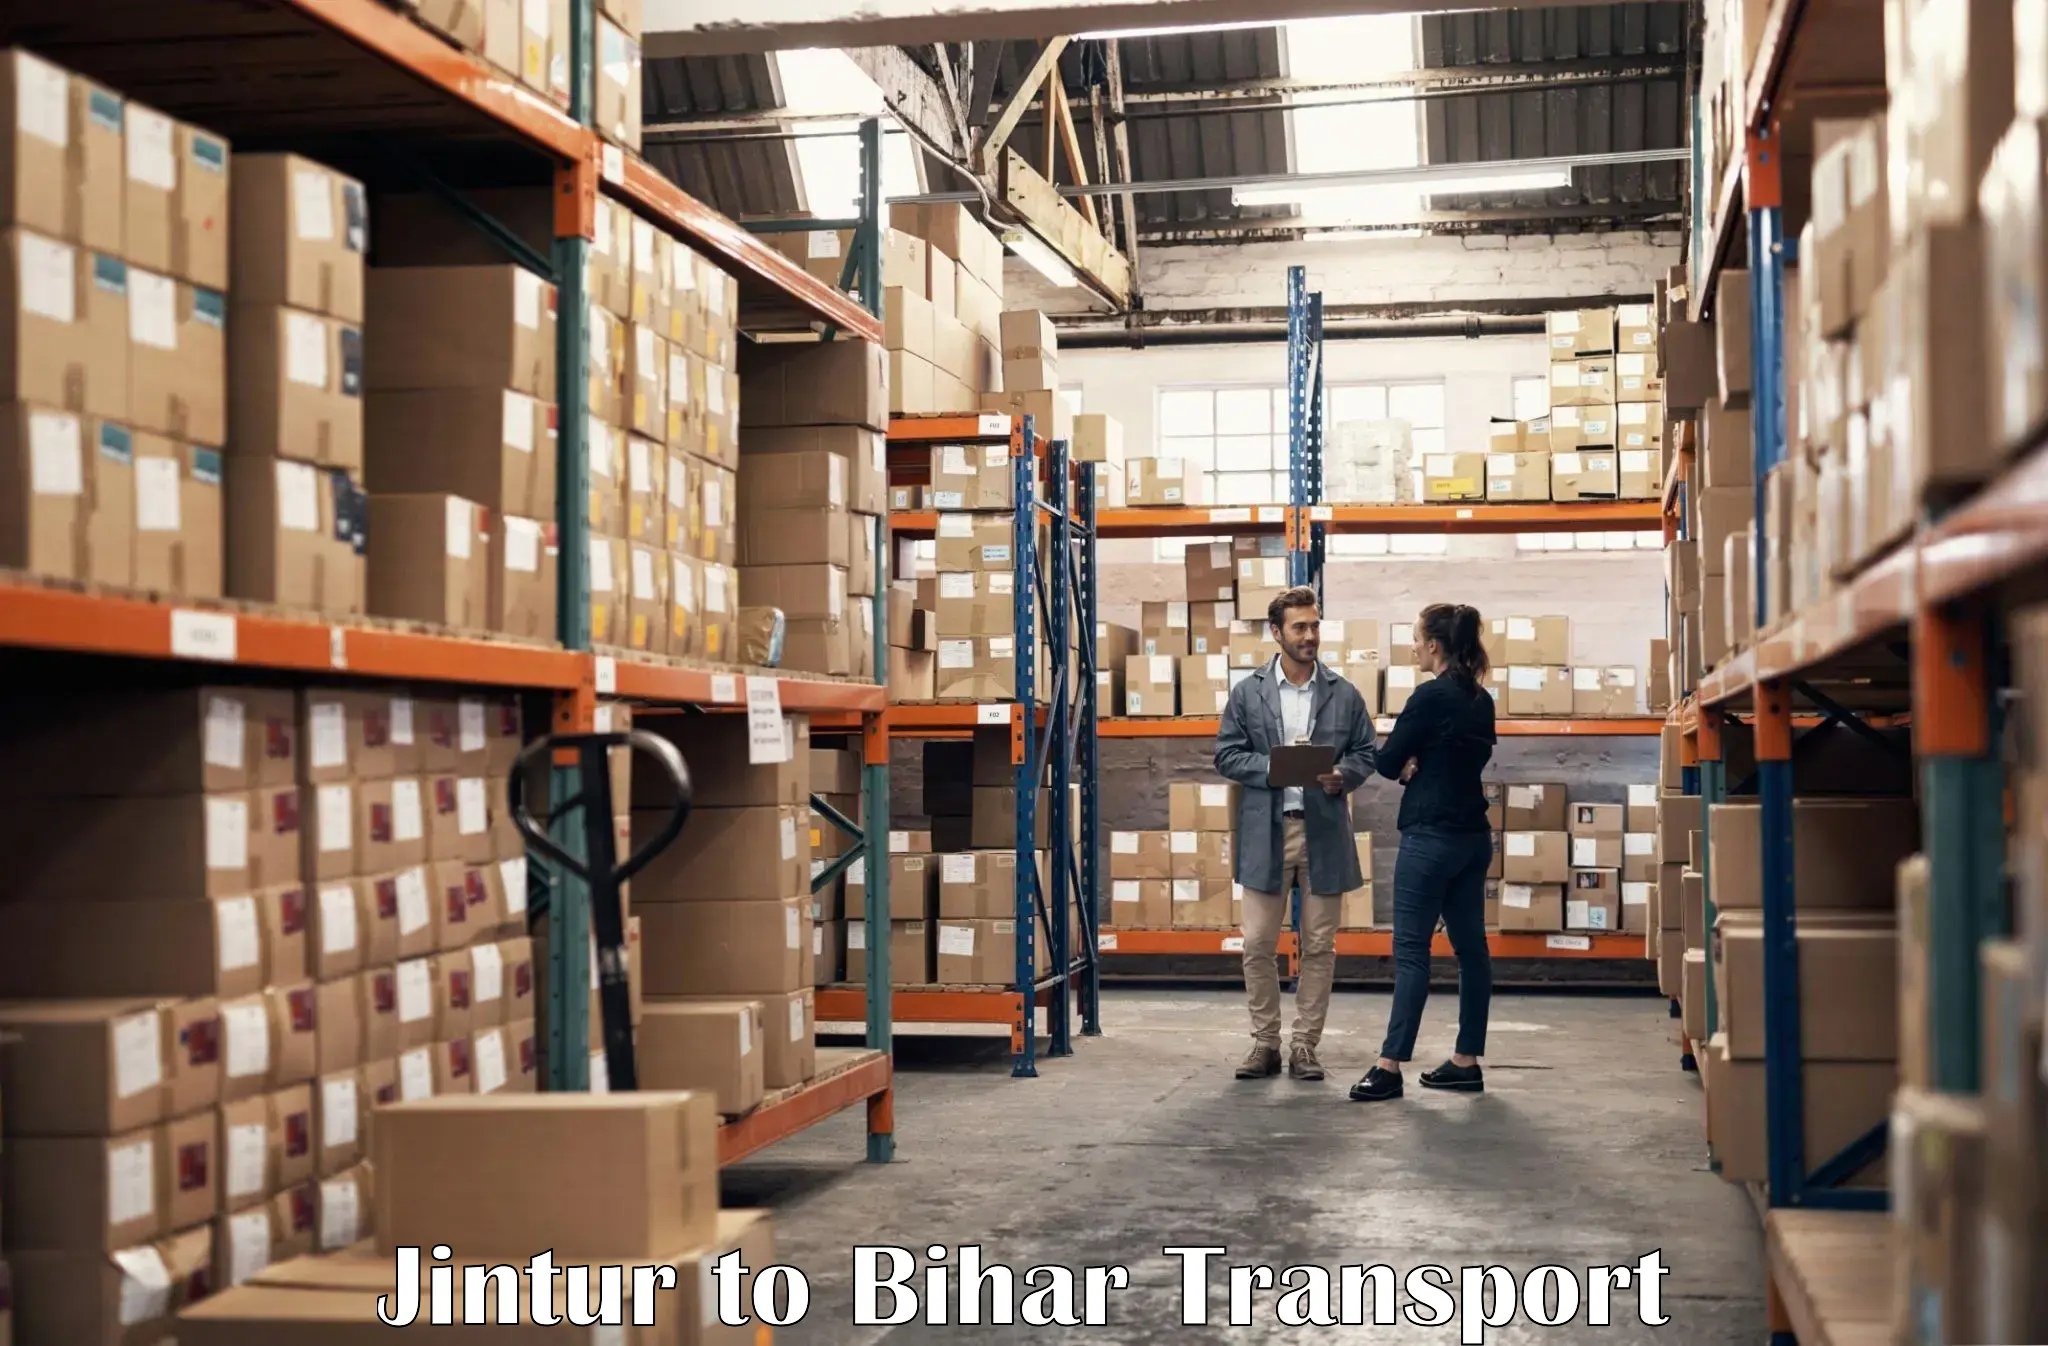 Commercial transport service Jintur to Ekma